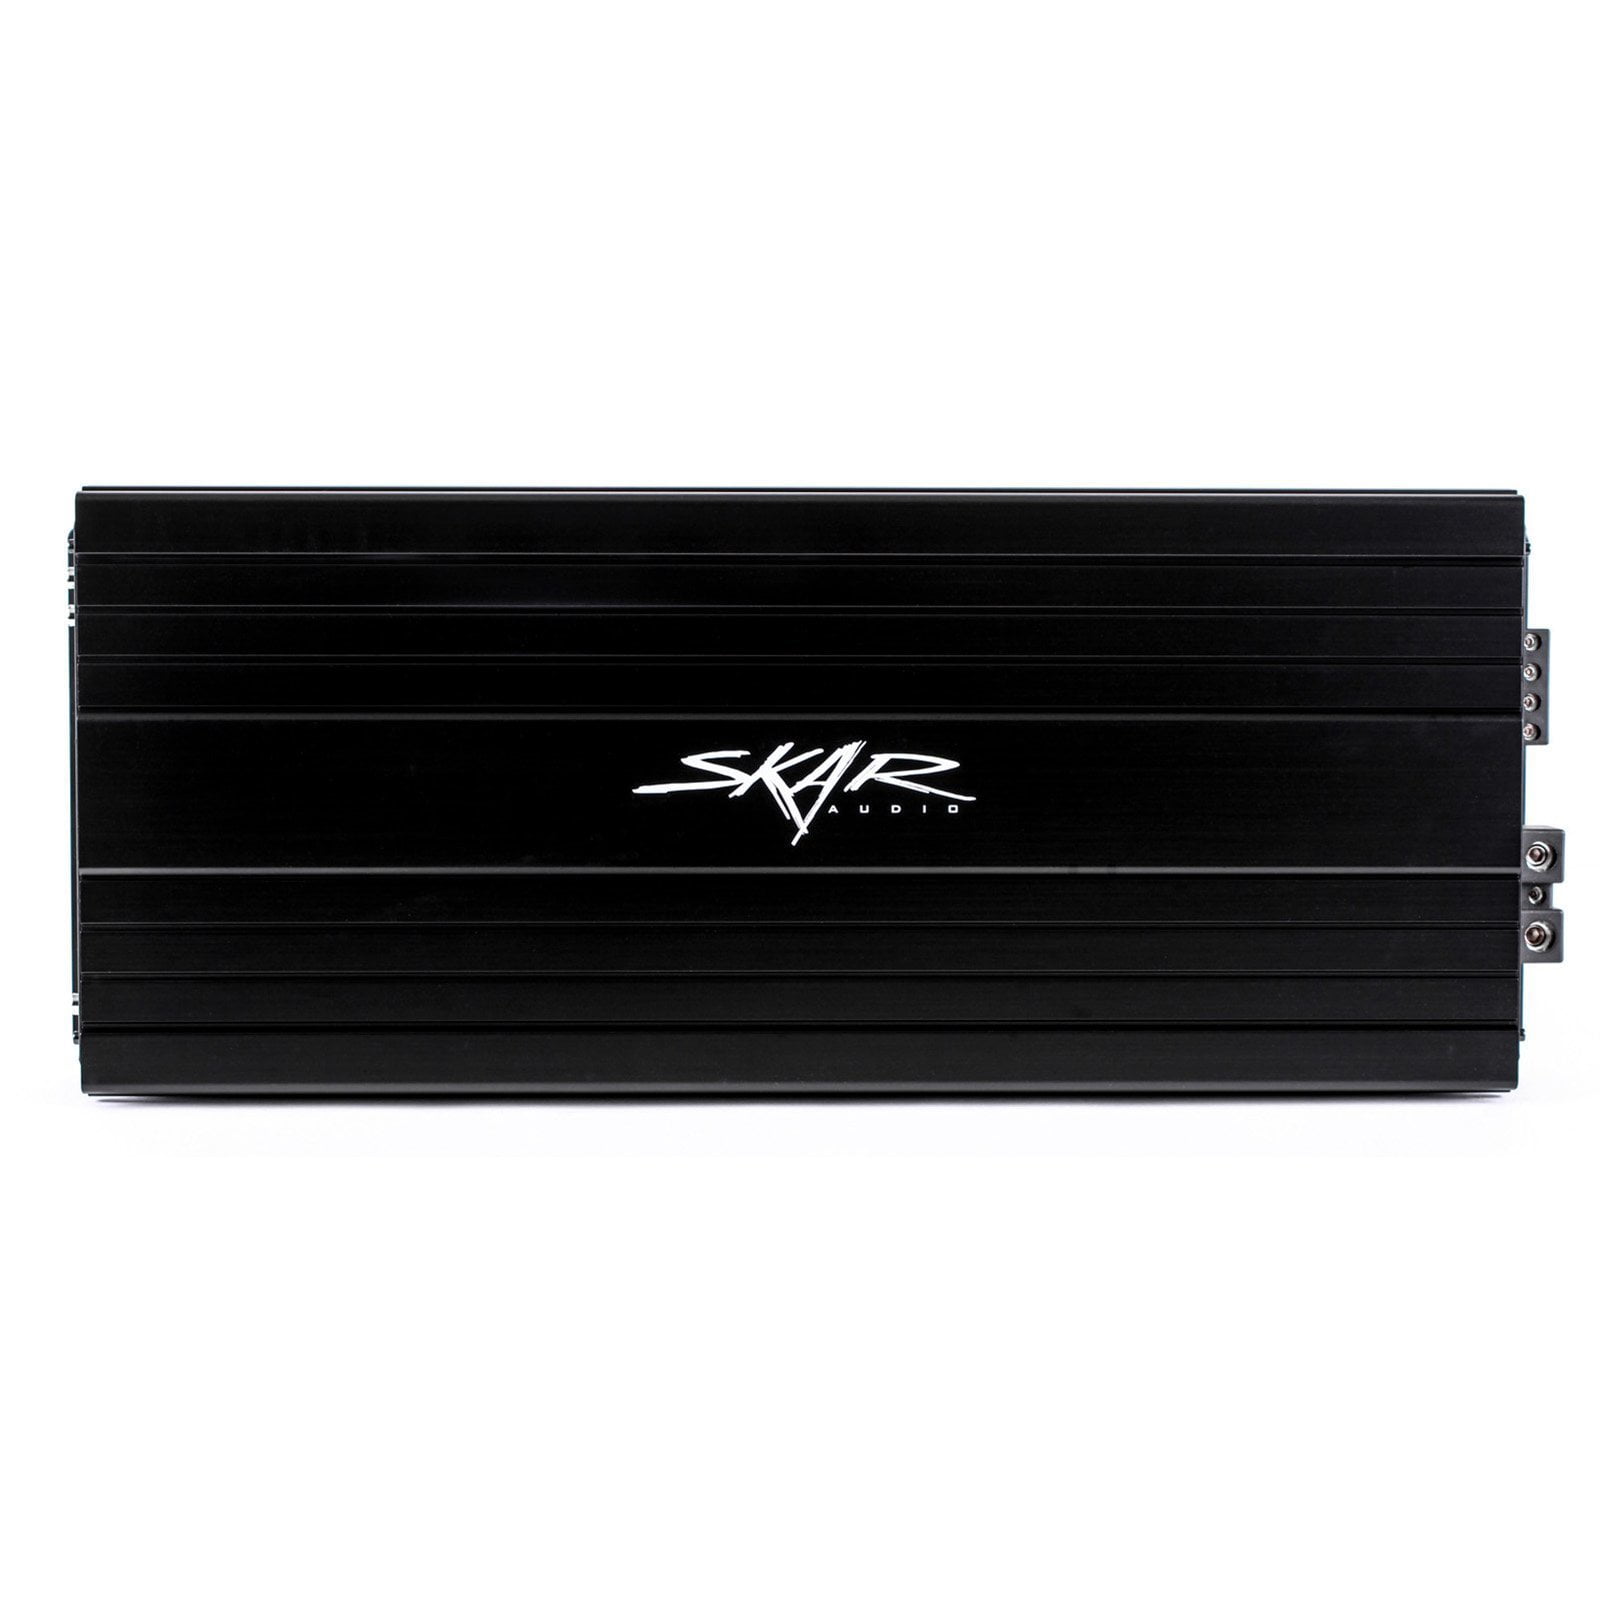 Skar Audio SKv2-3500.1D 3,500 Watt Class D Monoblock Car Amplifier - Front View